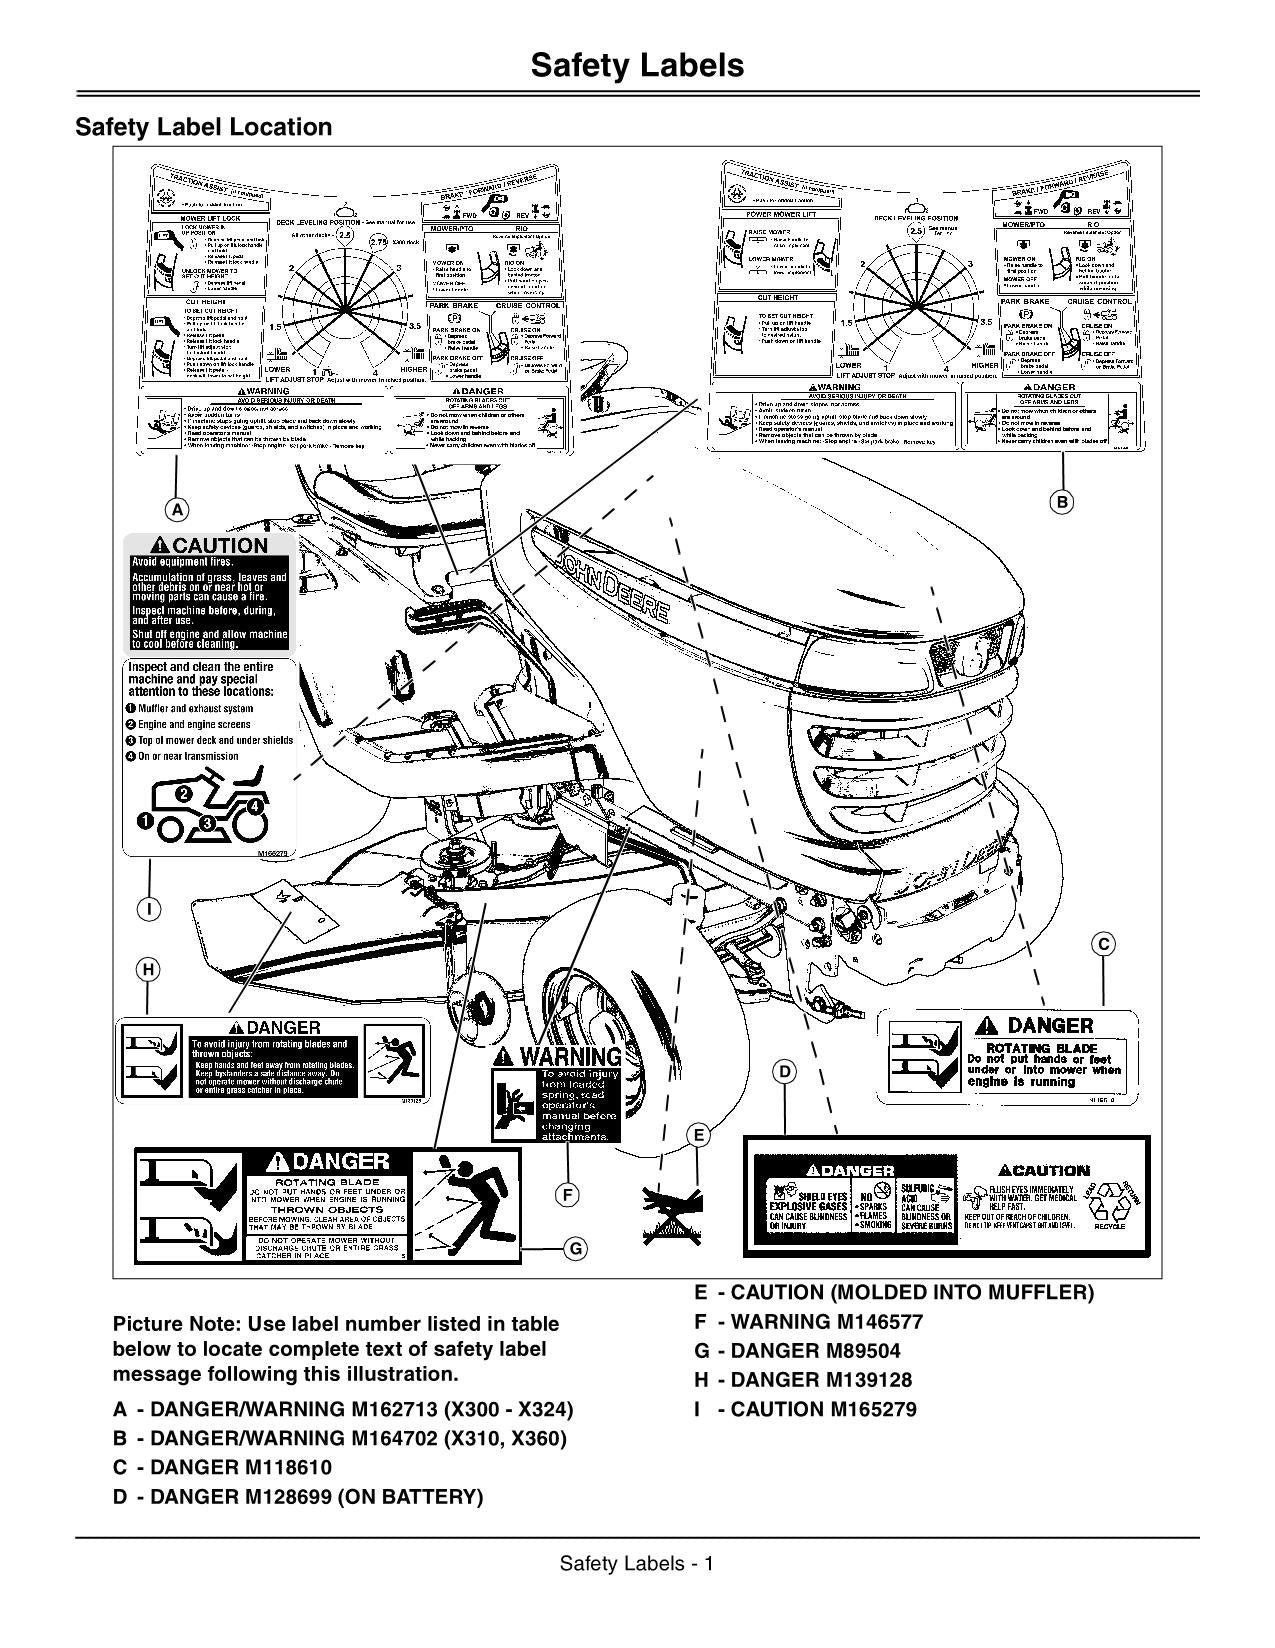 John Deere X300 Parts Manual, PDF, Tractor